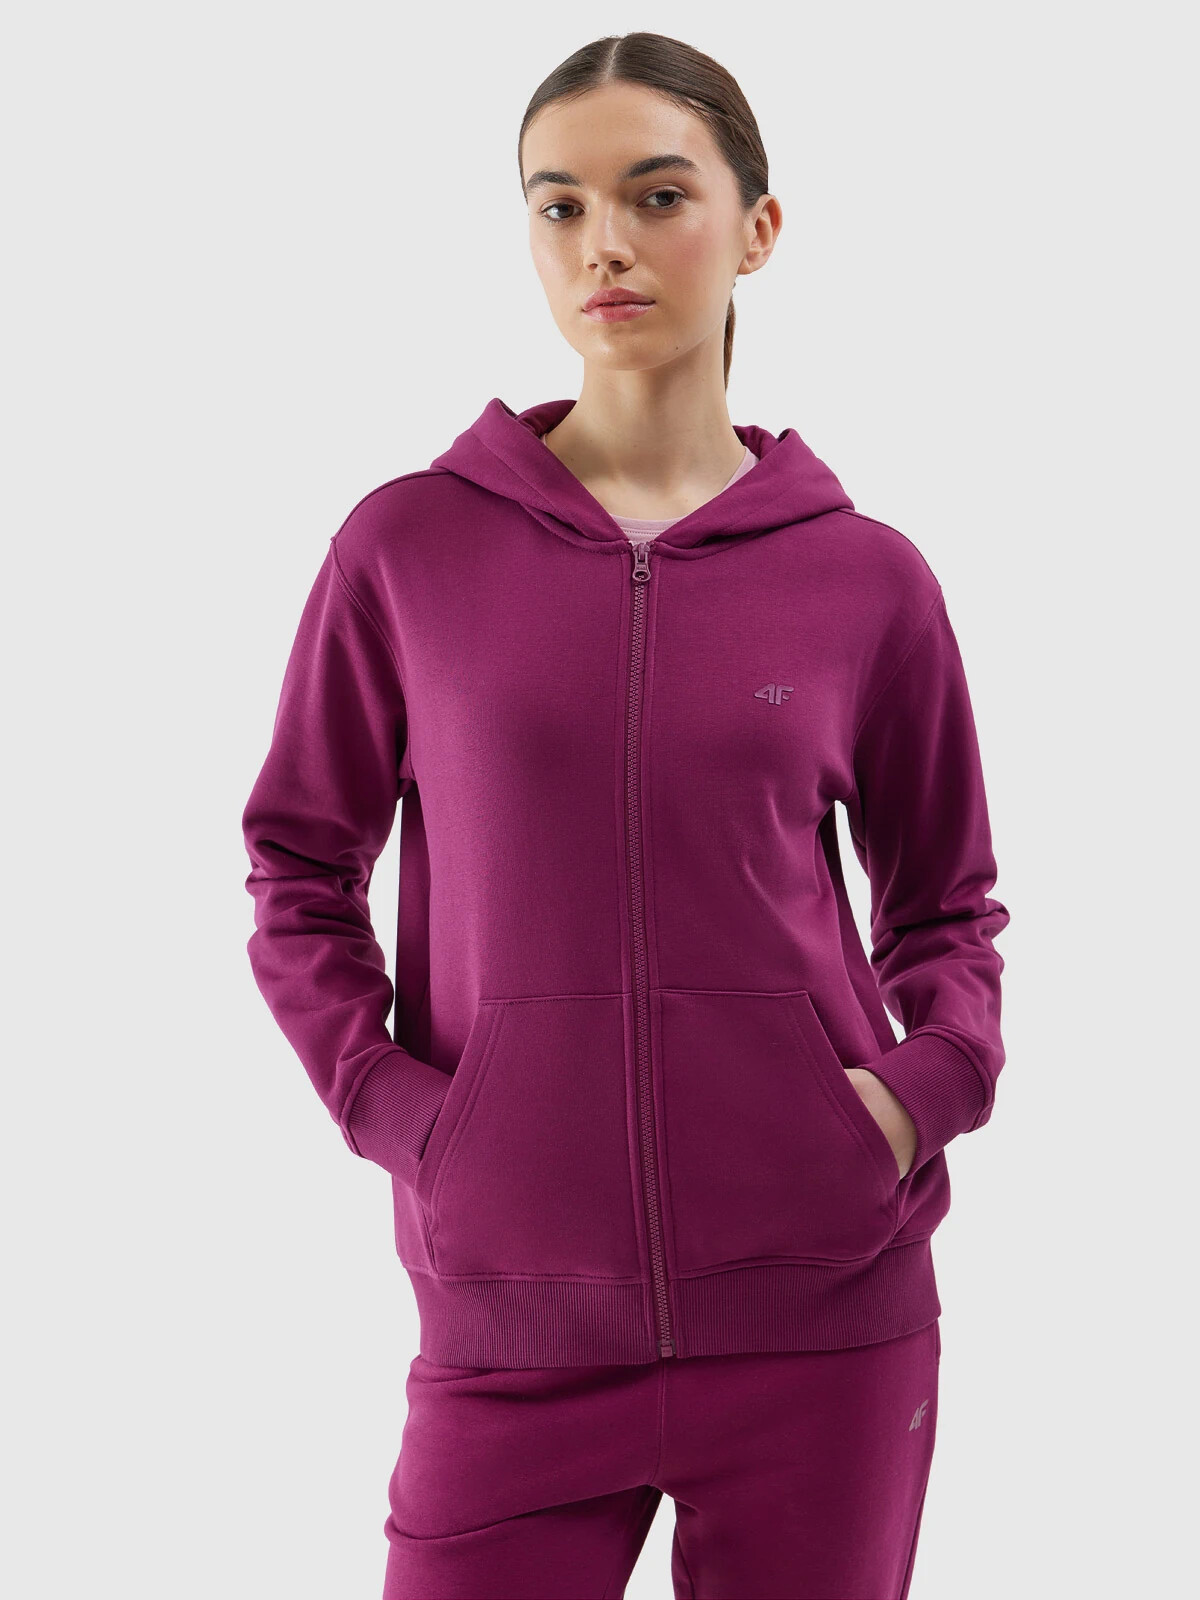 Women's sweatshirt 4F - purple